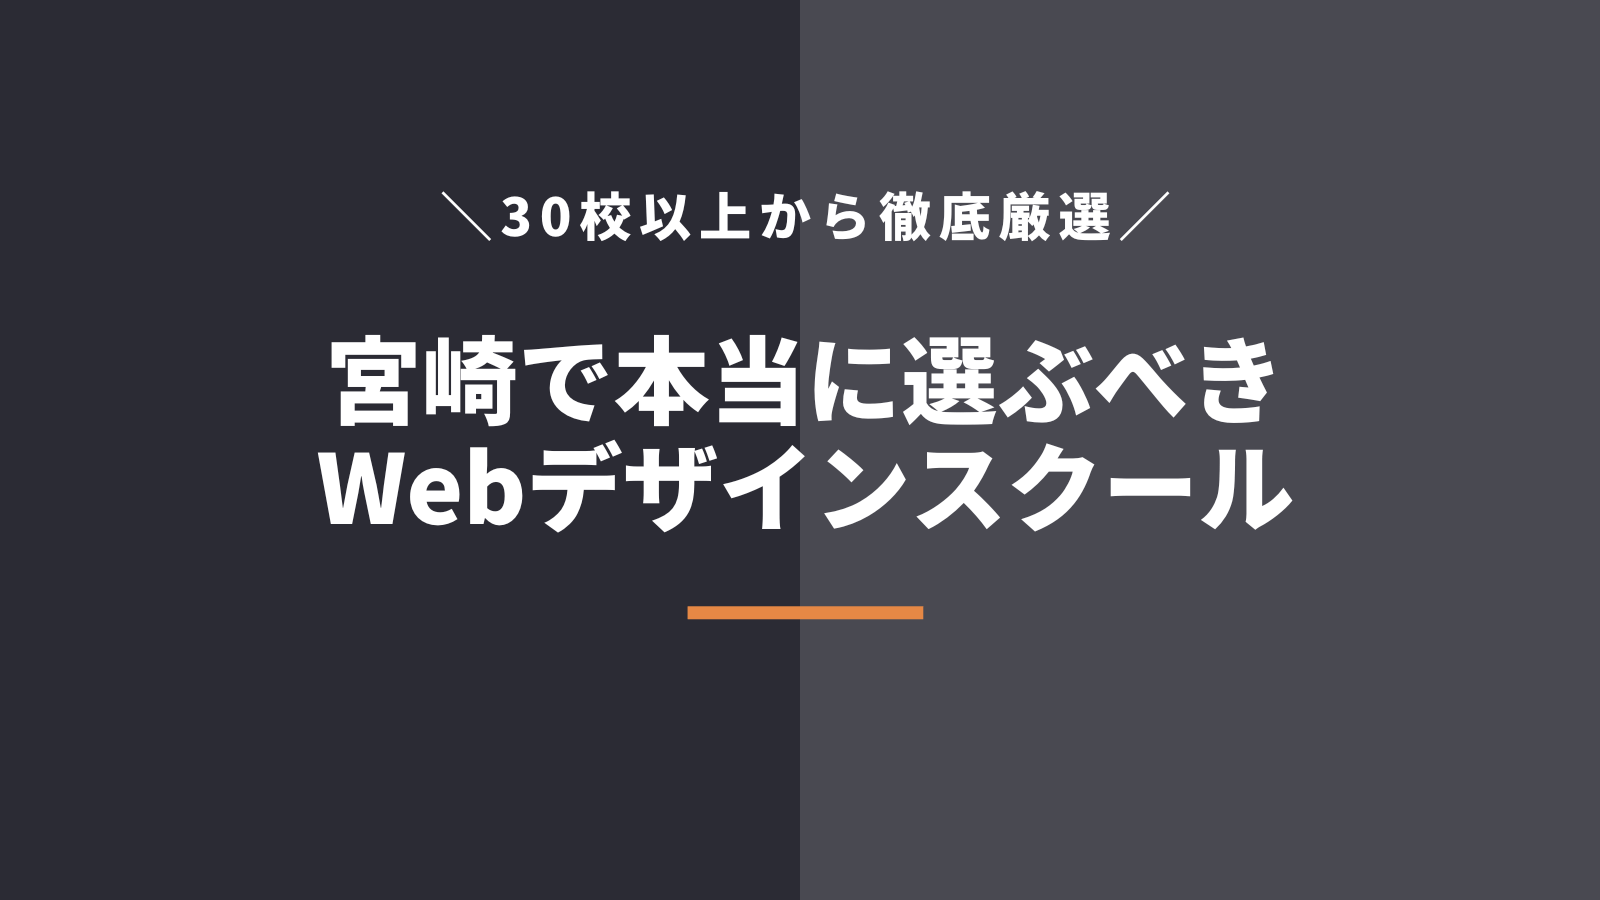 宮崎県で本当に選ぶべきWebデザインスクール・学校5選